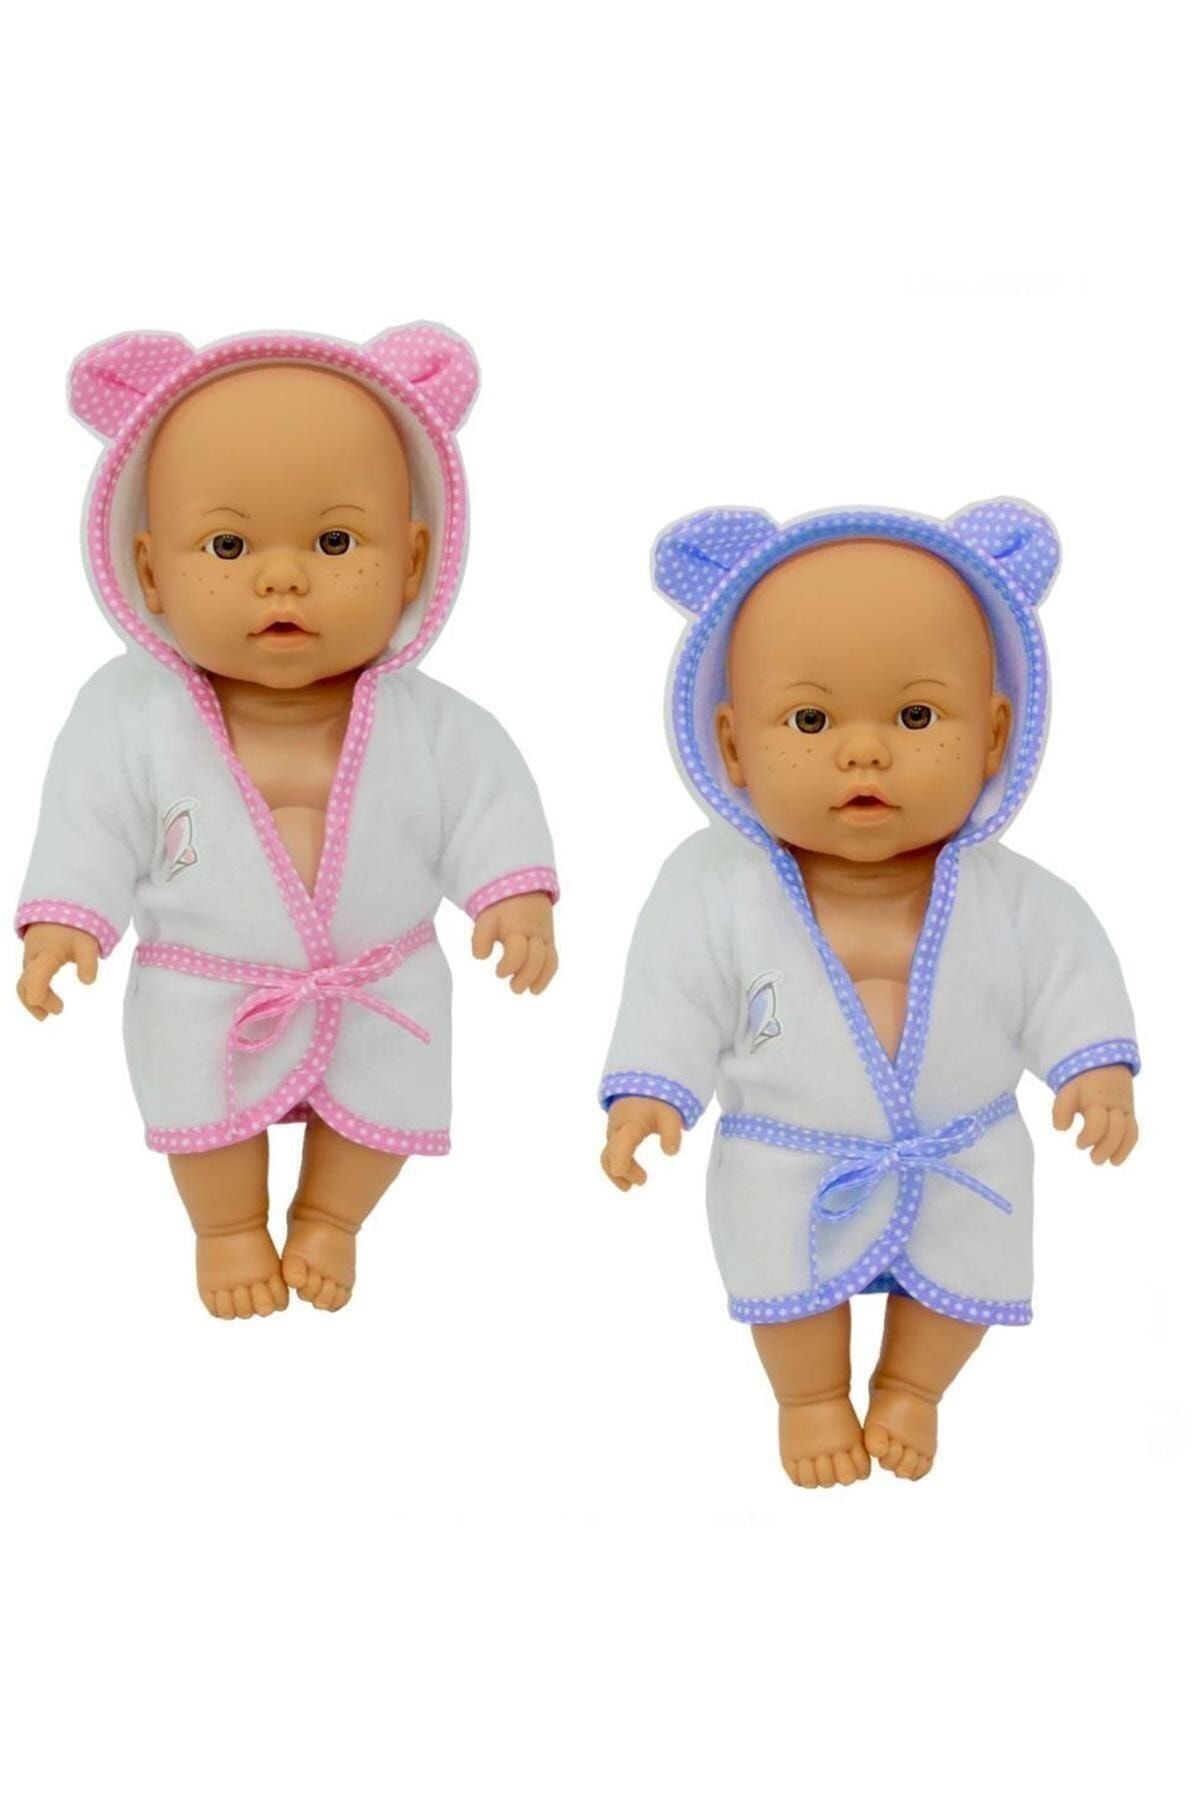 Sunman Bebelou Banyo Zamanı Bebek - Bornozlu Bebek Renk Seçenekli Ürün